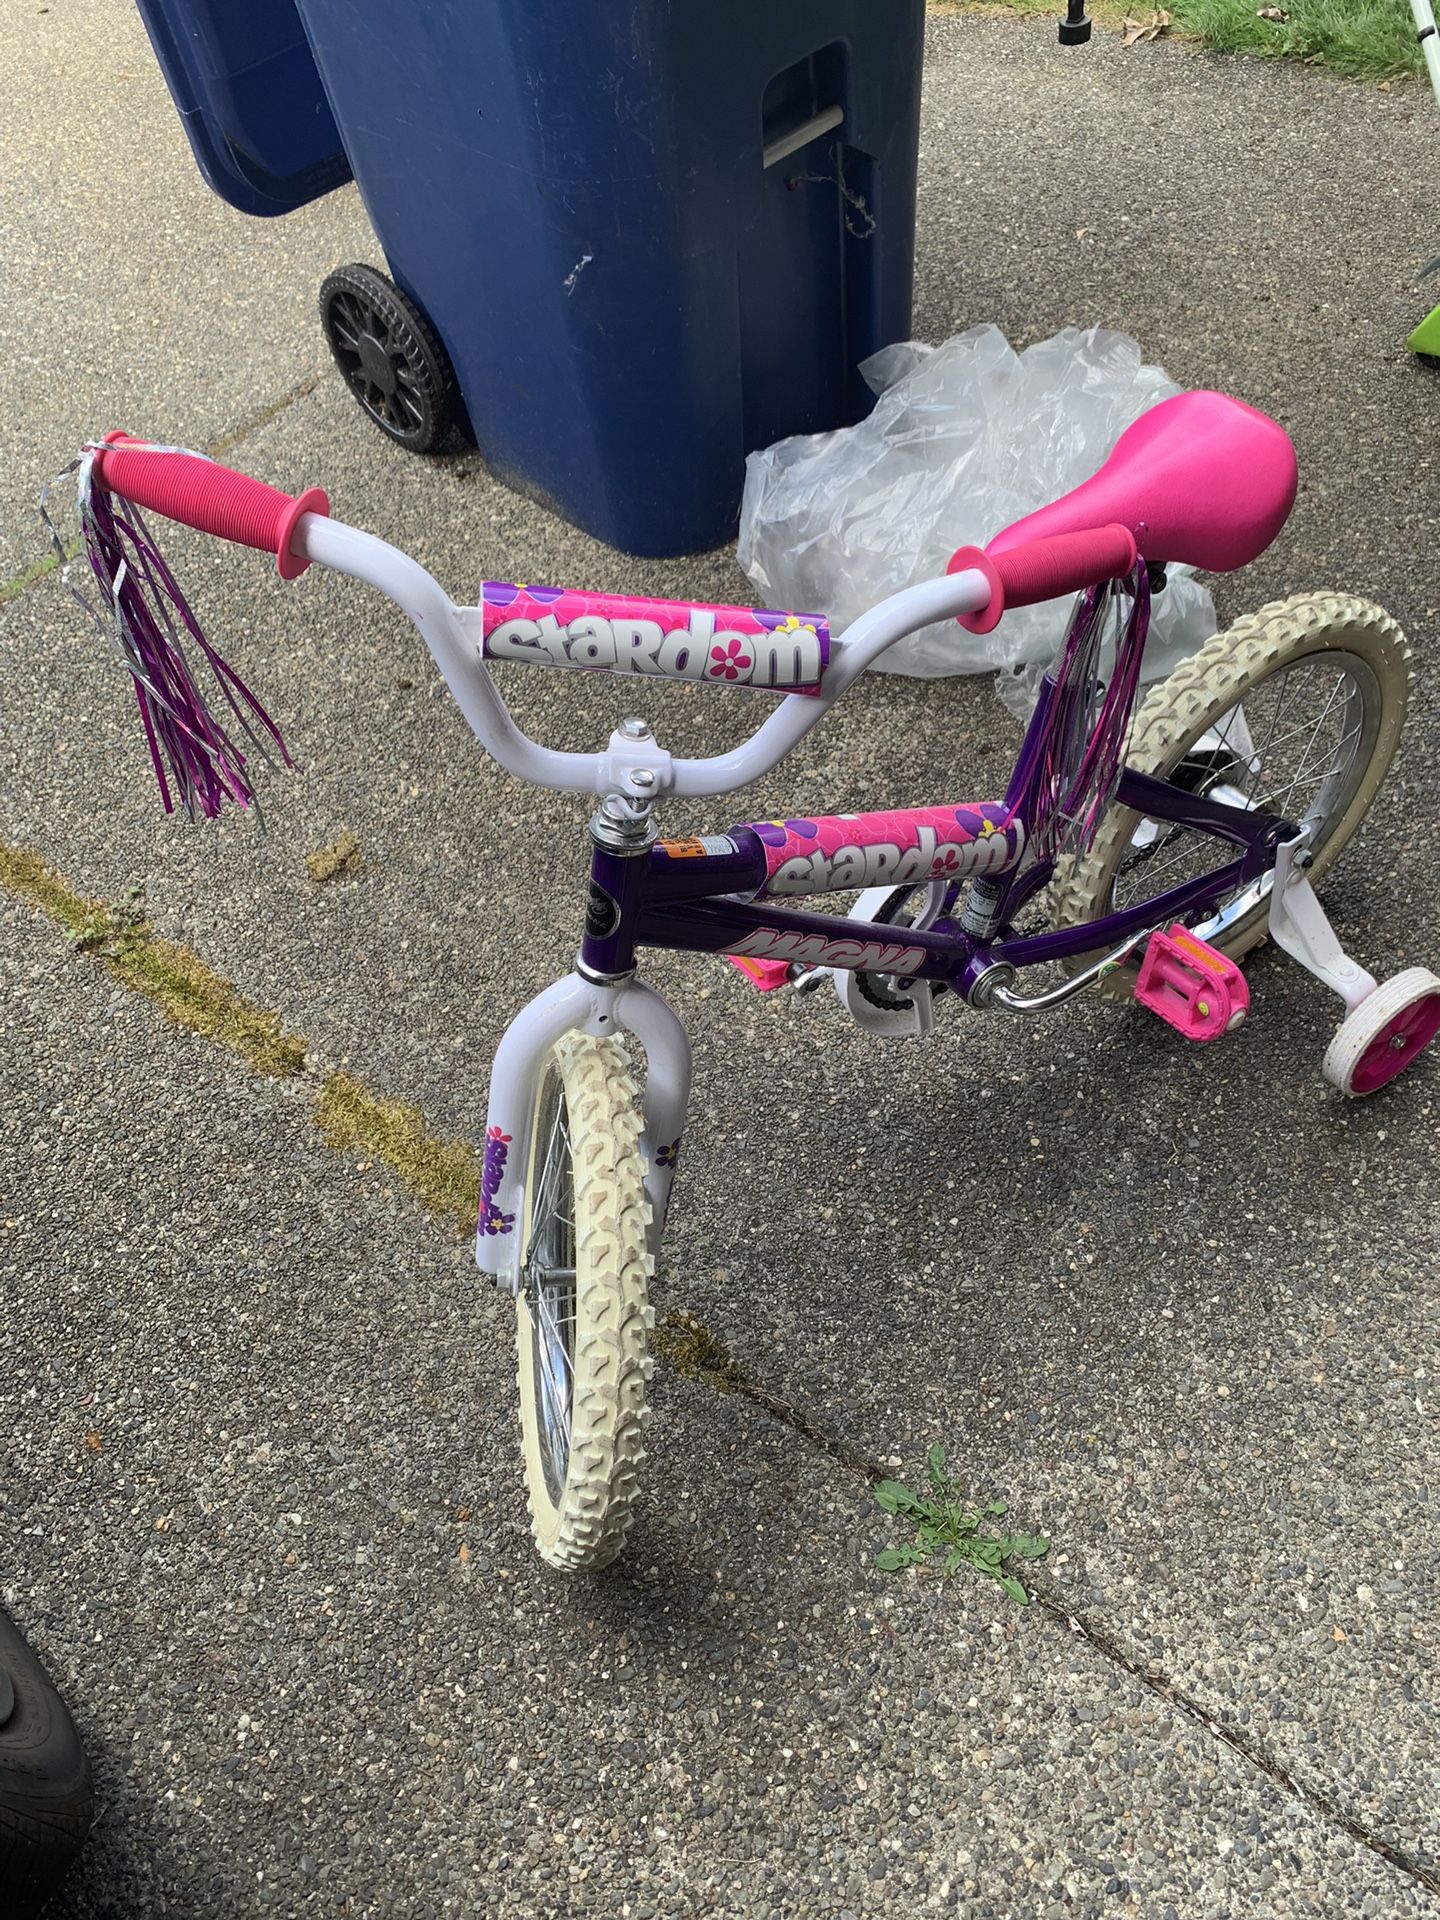 Magna Stardom 12” Girls Bike